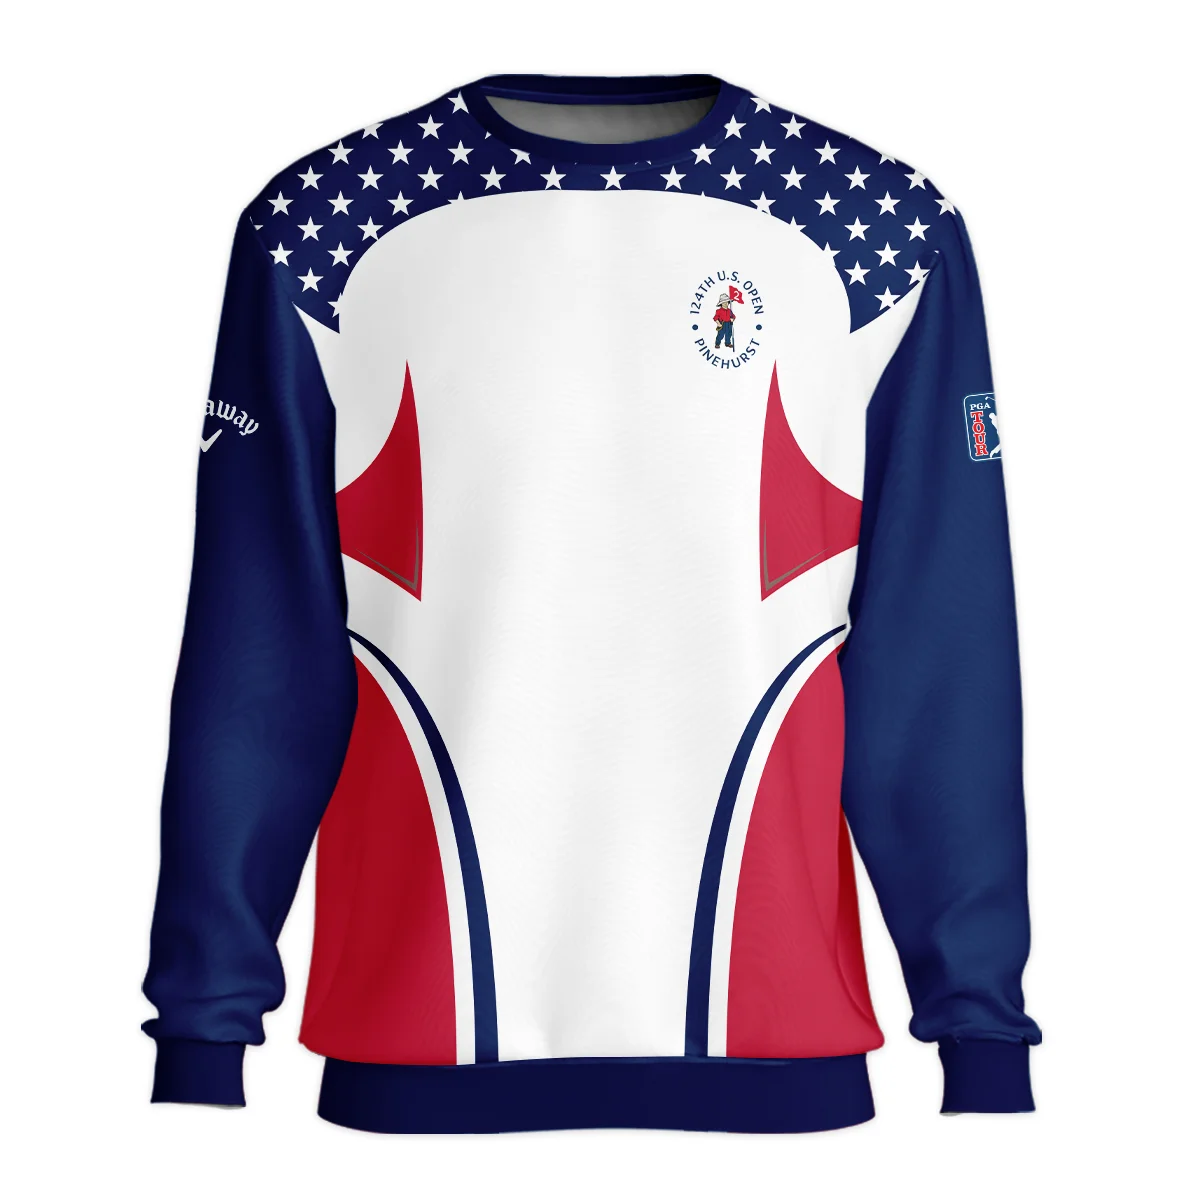 124th U.S. Open Pinehurst Callaway Stars White Dark Blue Red Line Vneck Polo Shirt Style Classic Polo Shirt For Men